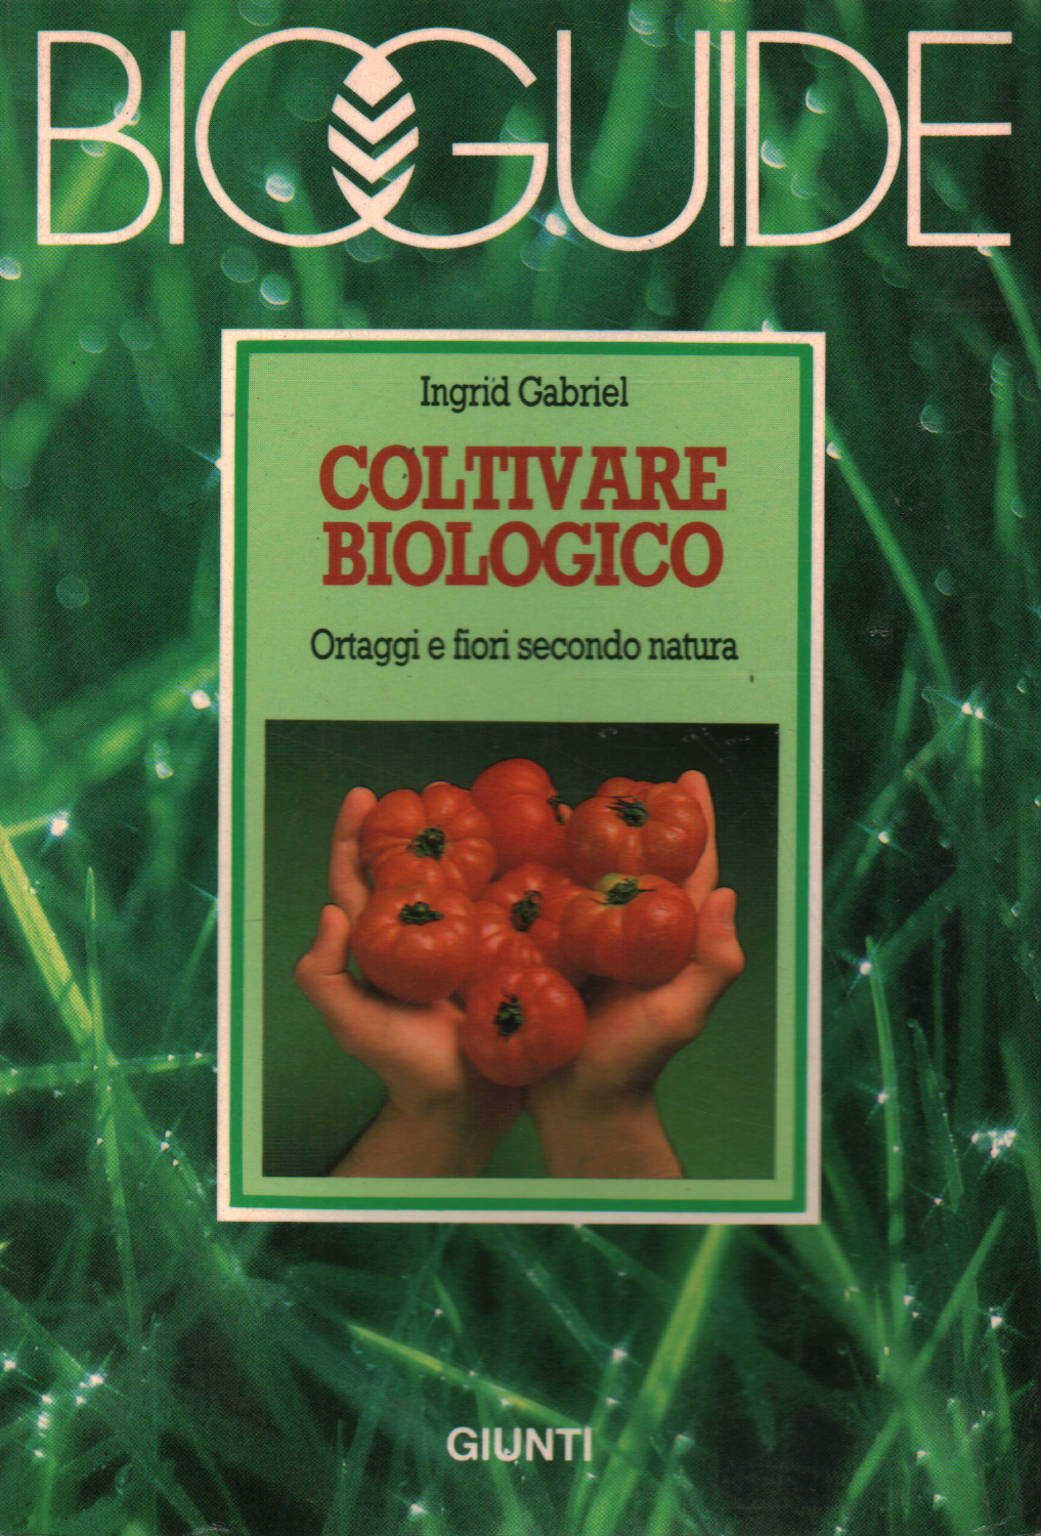 Ingrid Gabriel, usato, Coltivare biologico:Ortaggi e fiori secondo natura,  Libreria, Manualistica, 